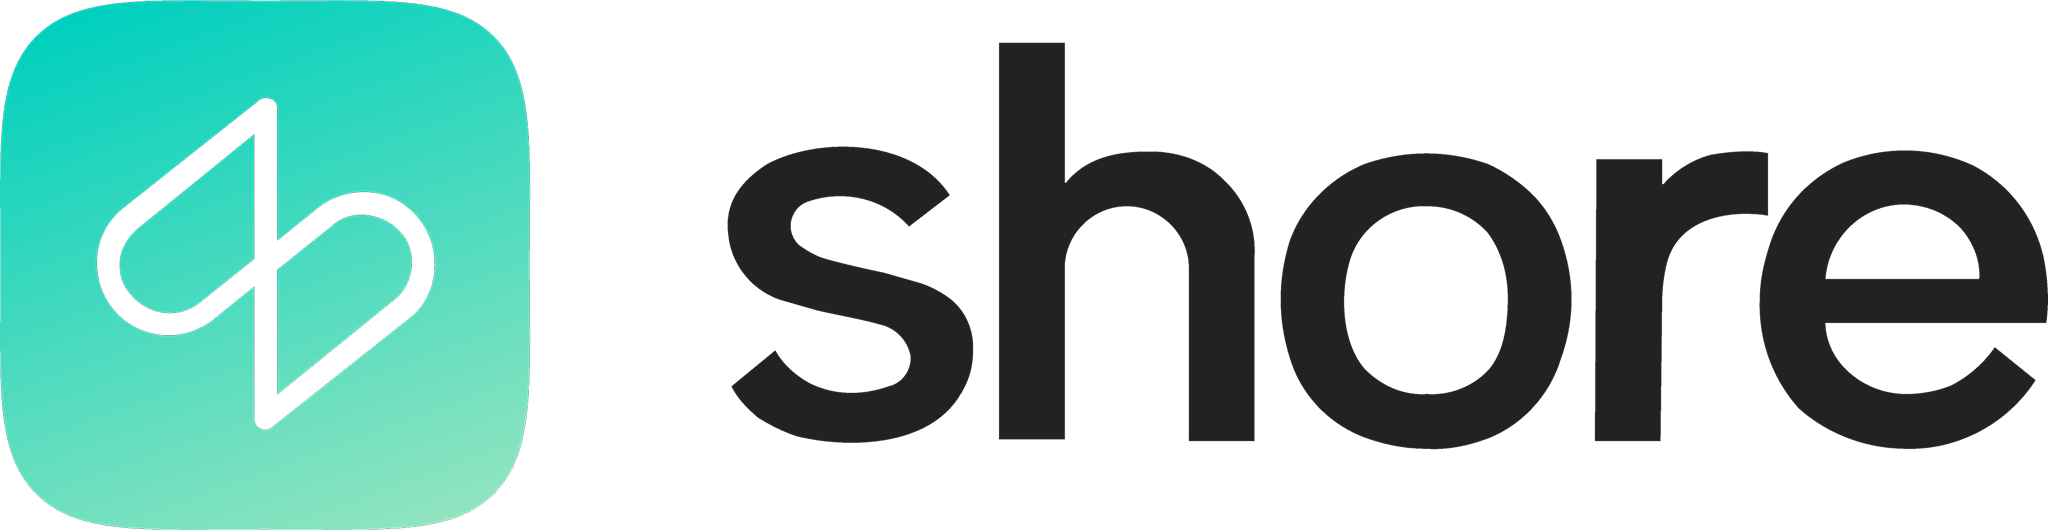 shore-logo